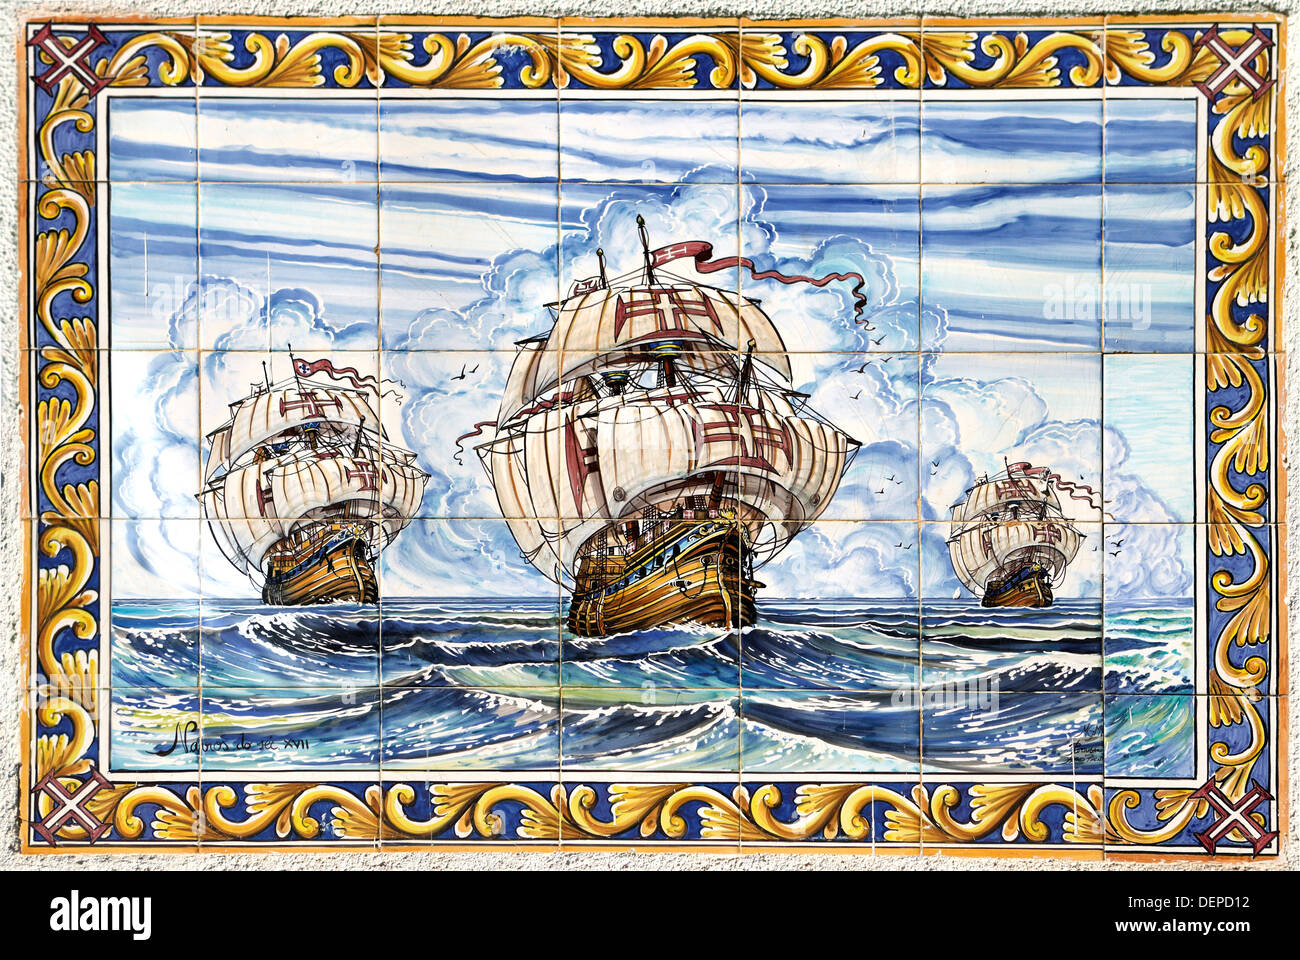 Les carreaux de céramique peints à la main, décoration murale, Lisbonne, Portugal Banque D'Images